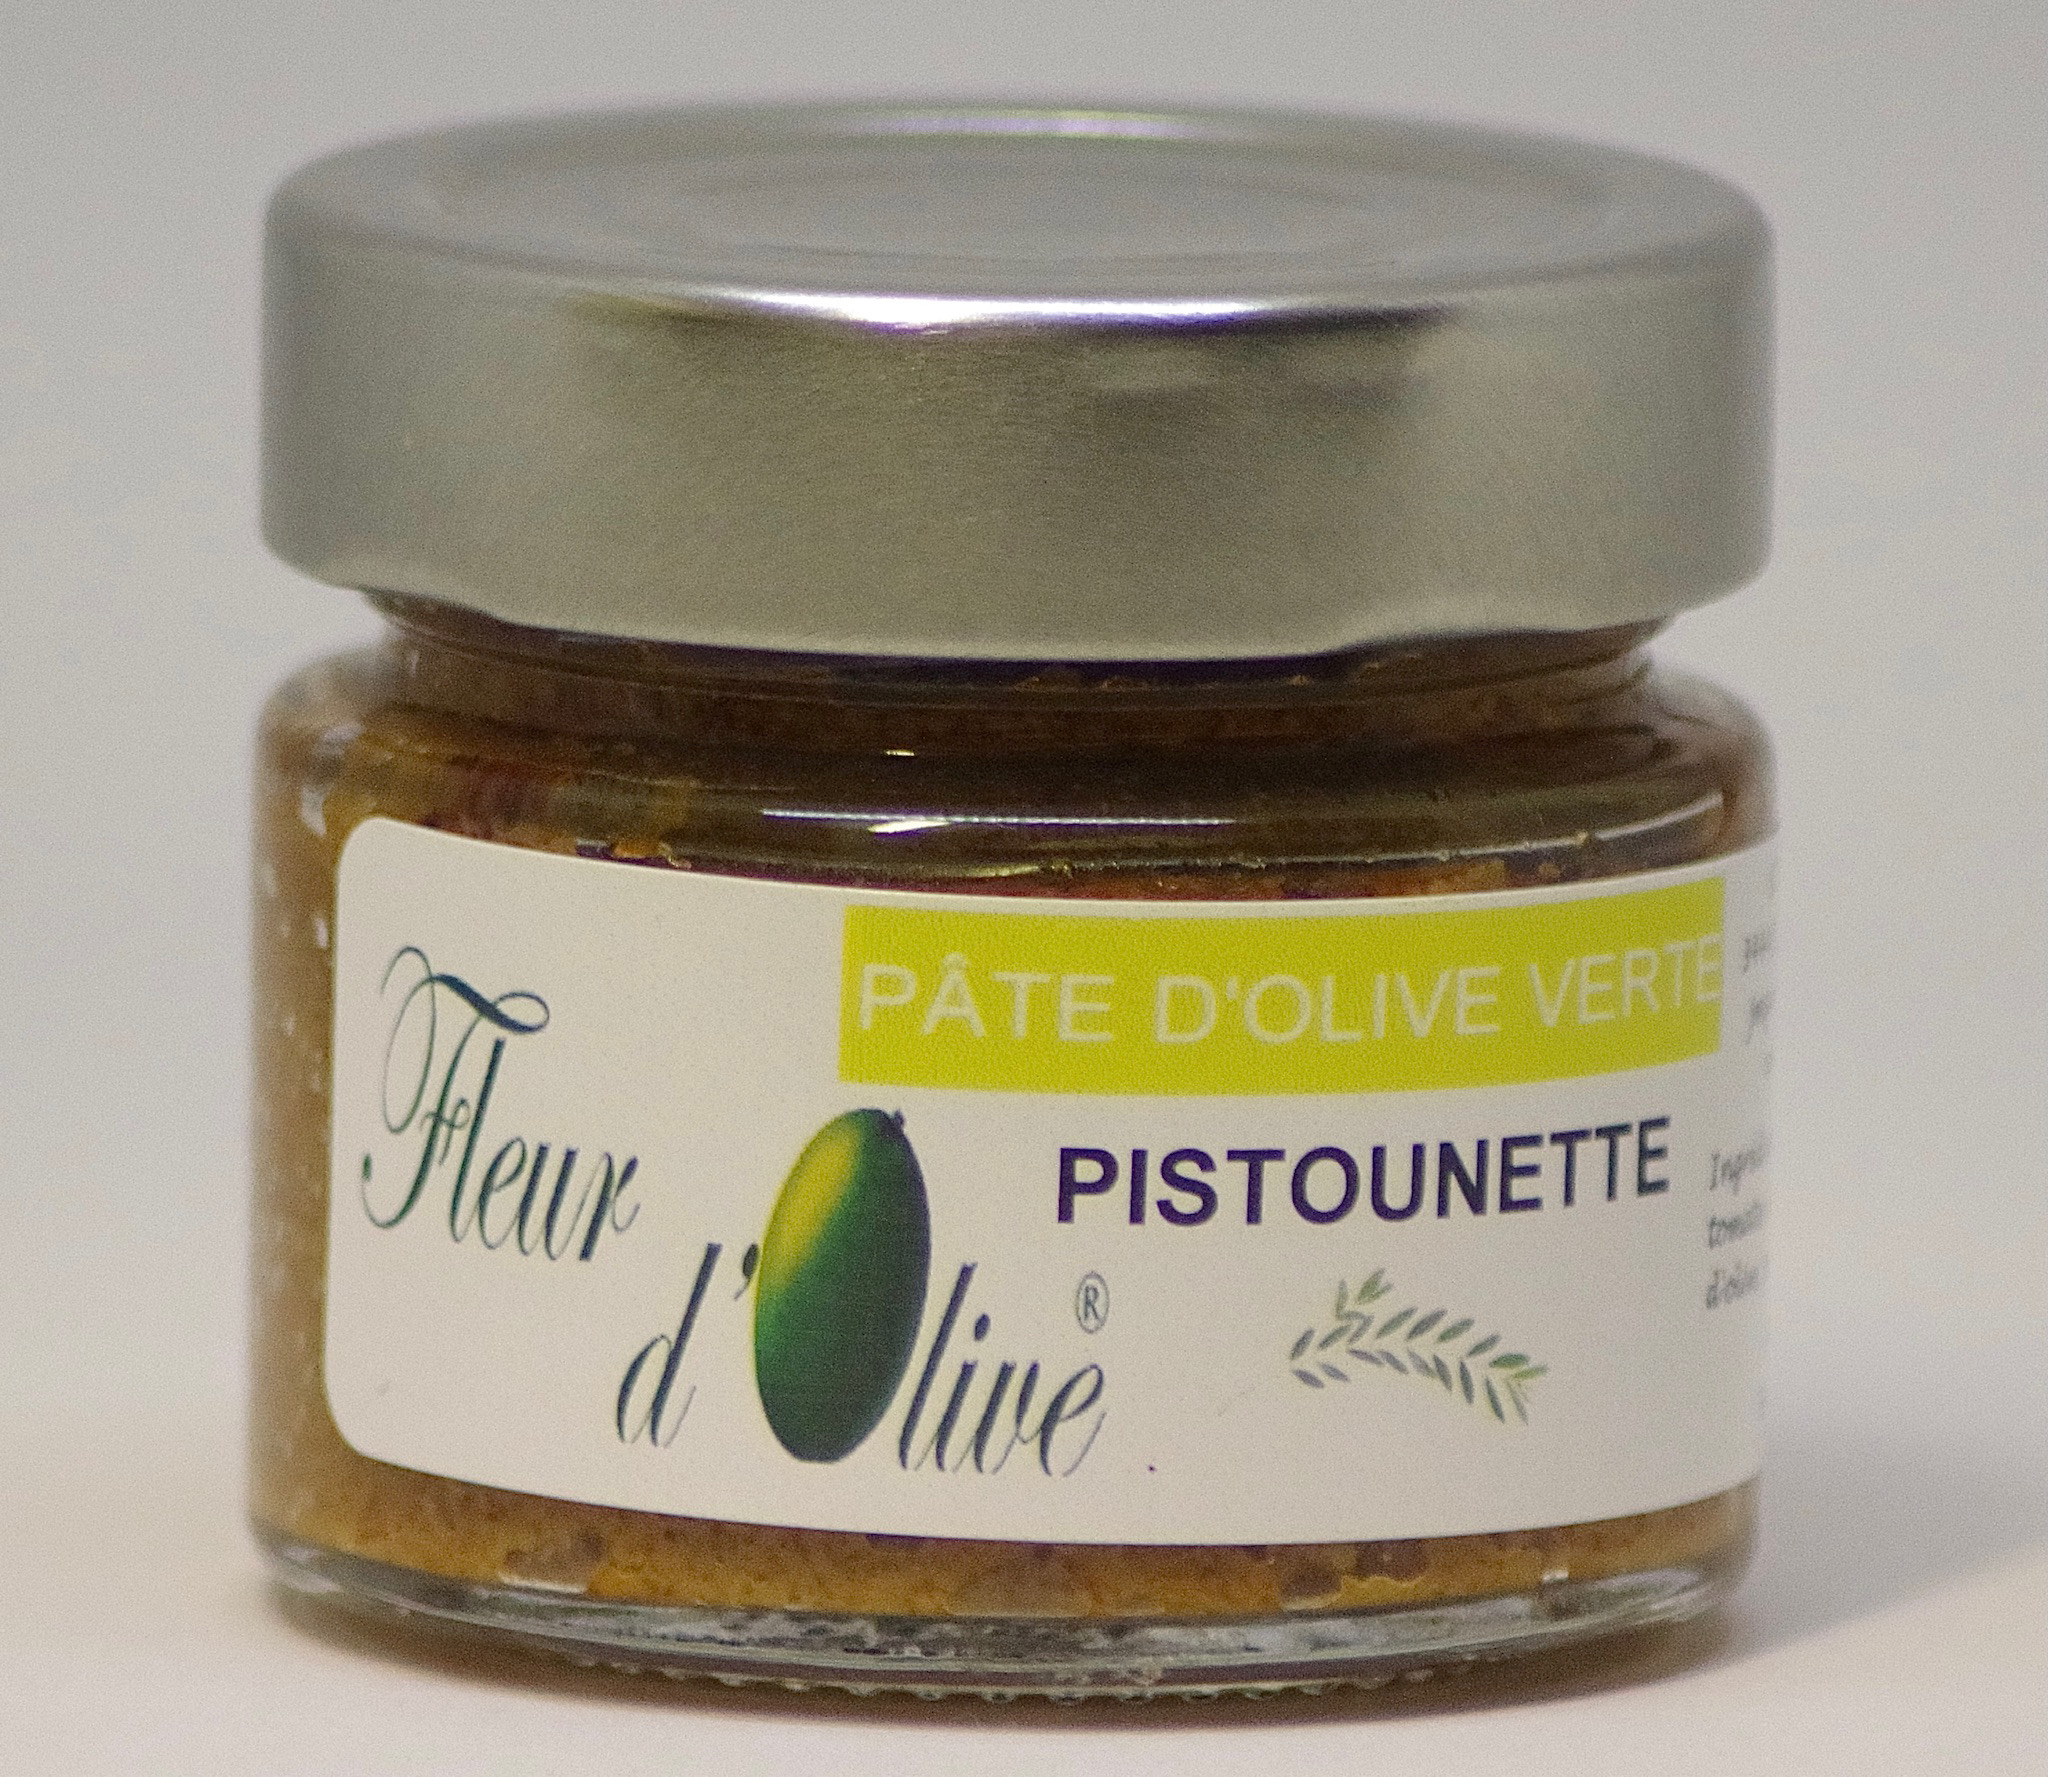 pate olives vertes pistounette